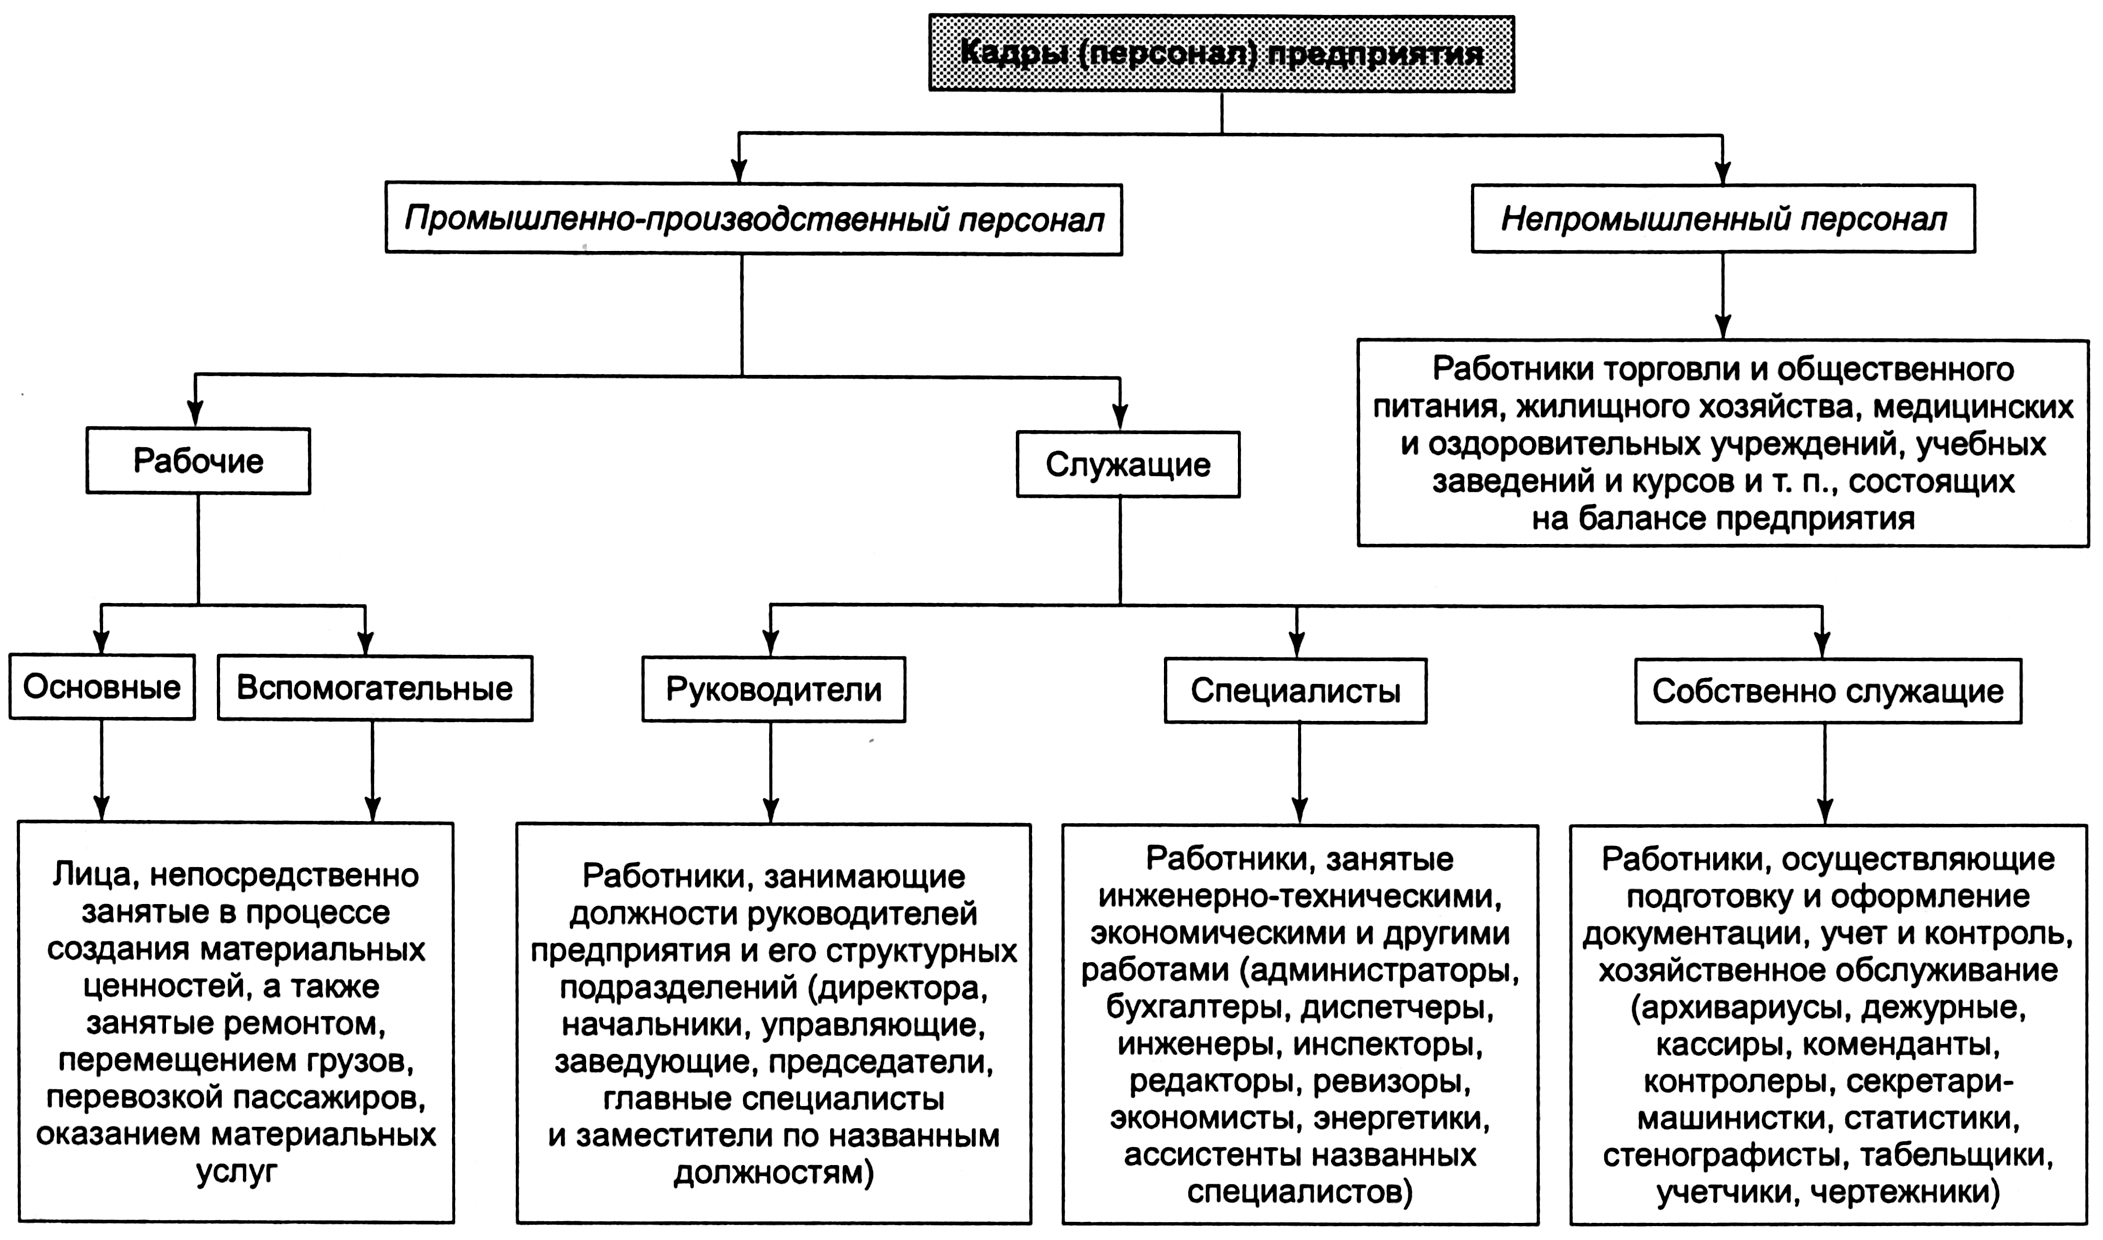 Как написать отчет по учебно-ознакомительной практике. инструкция - study365.ru